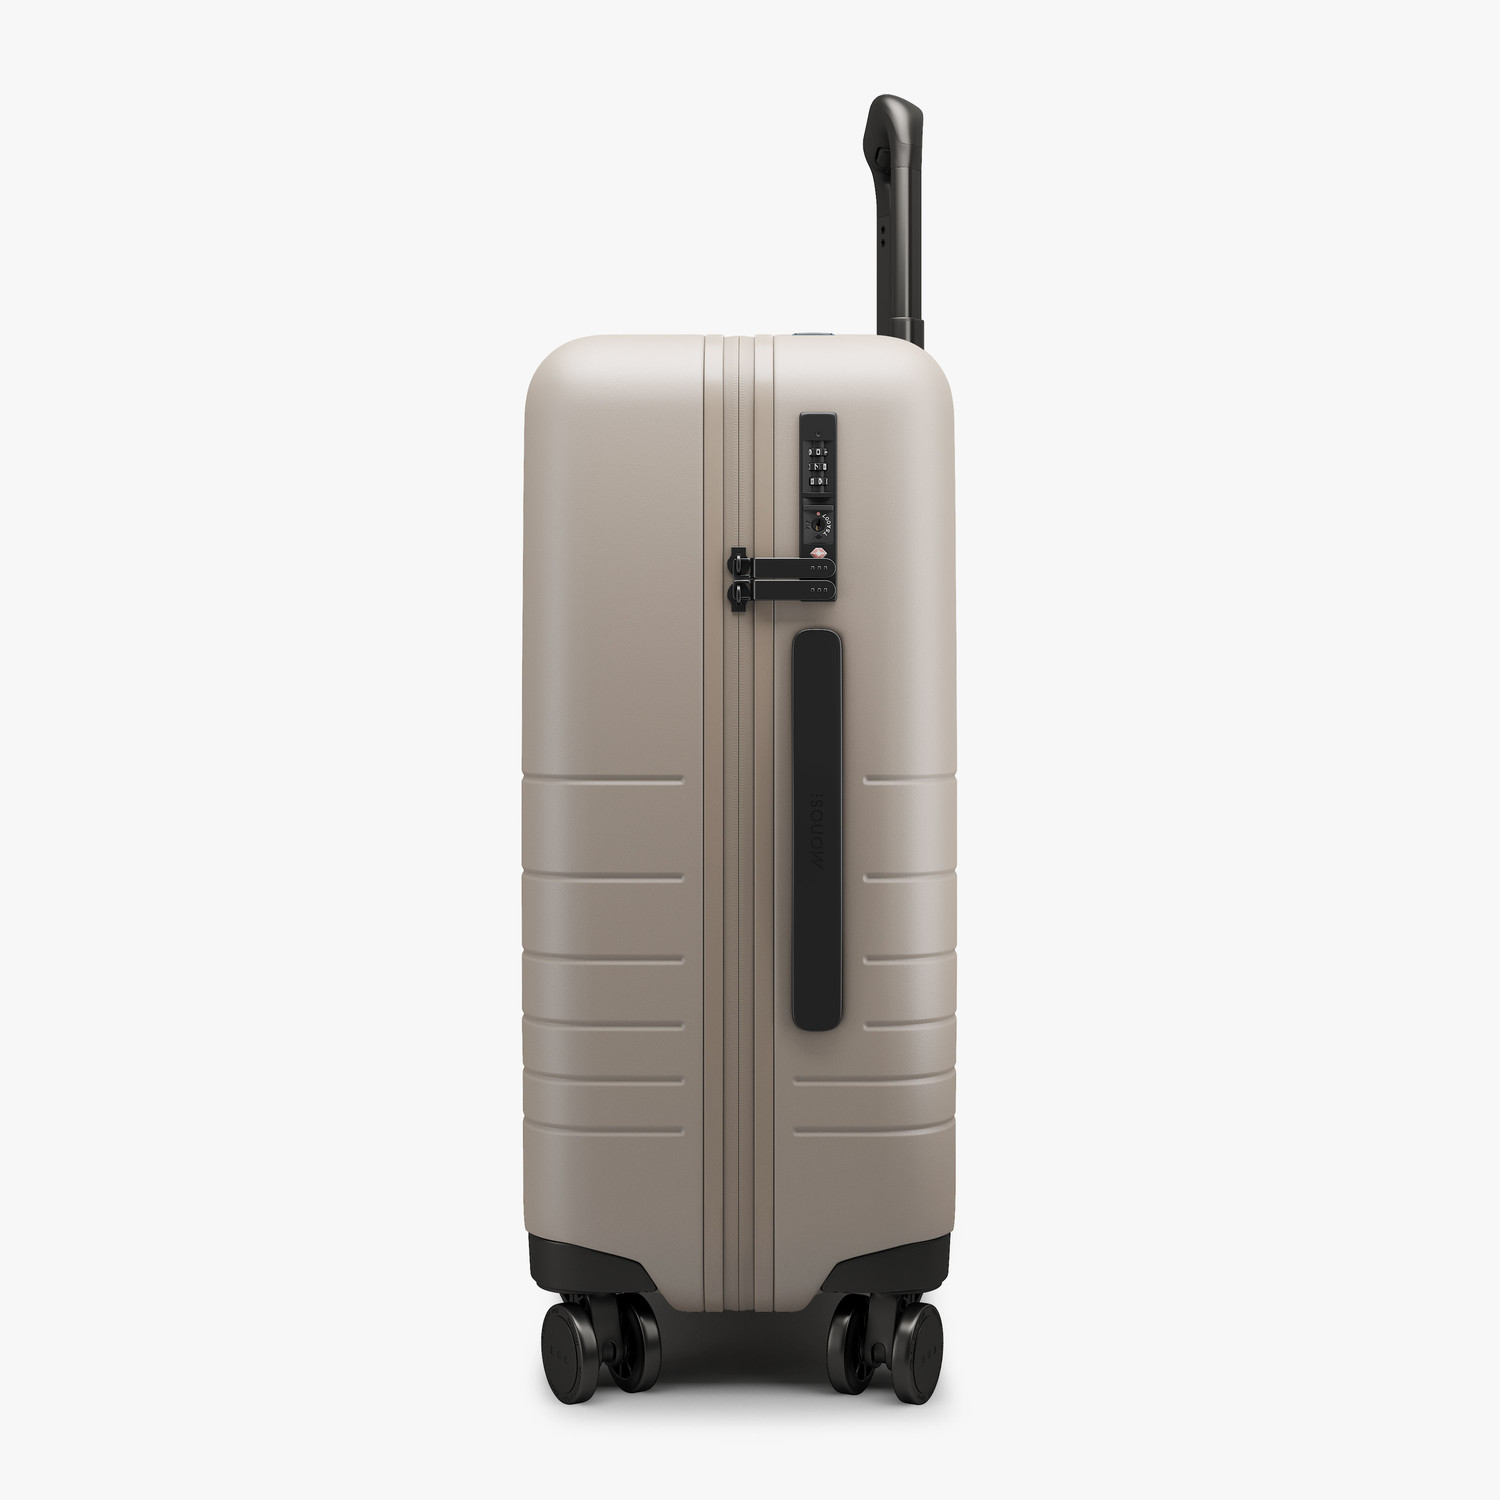 Monos // Carry-On // Plus (Rose Quartz) - Monos Luggage - Touch of Modern